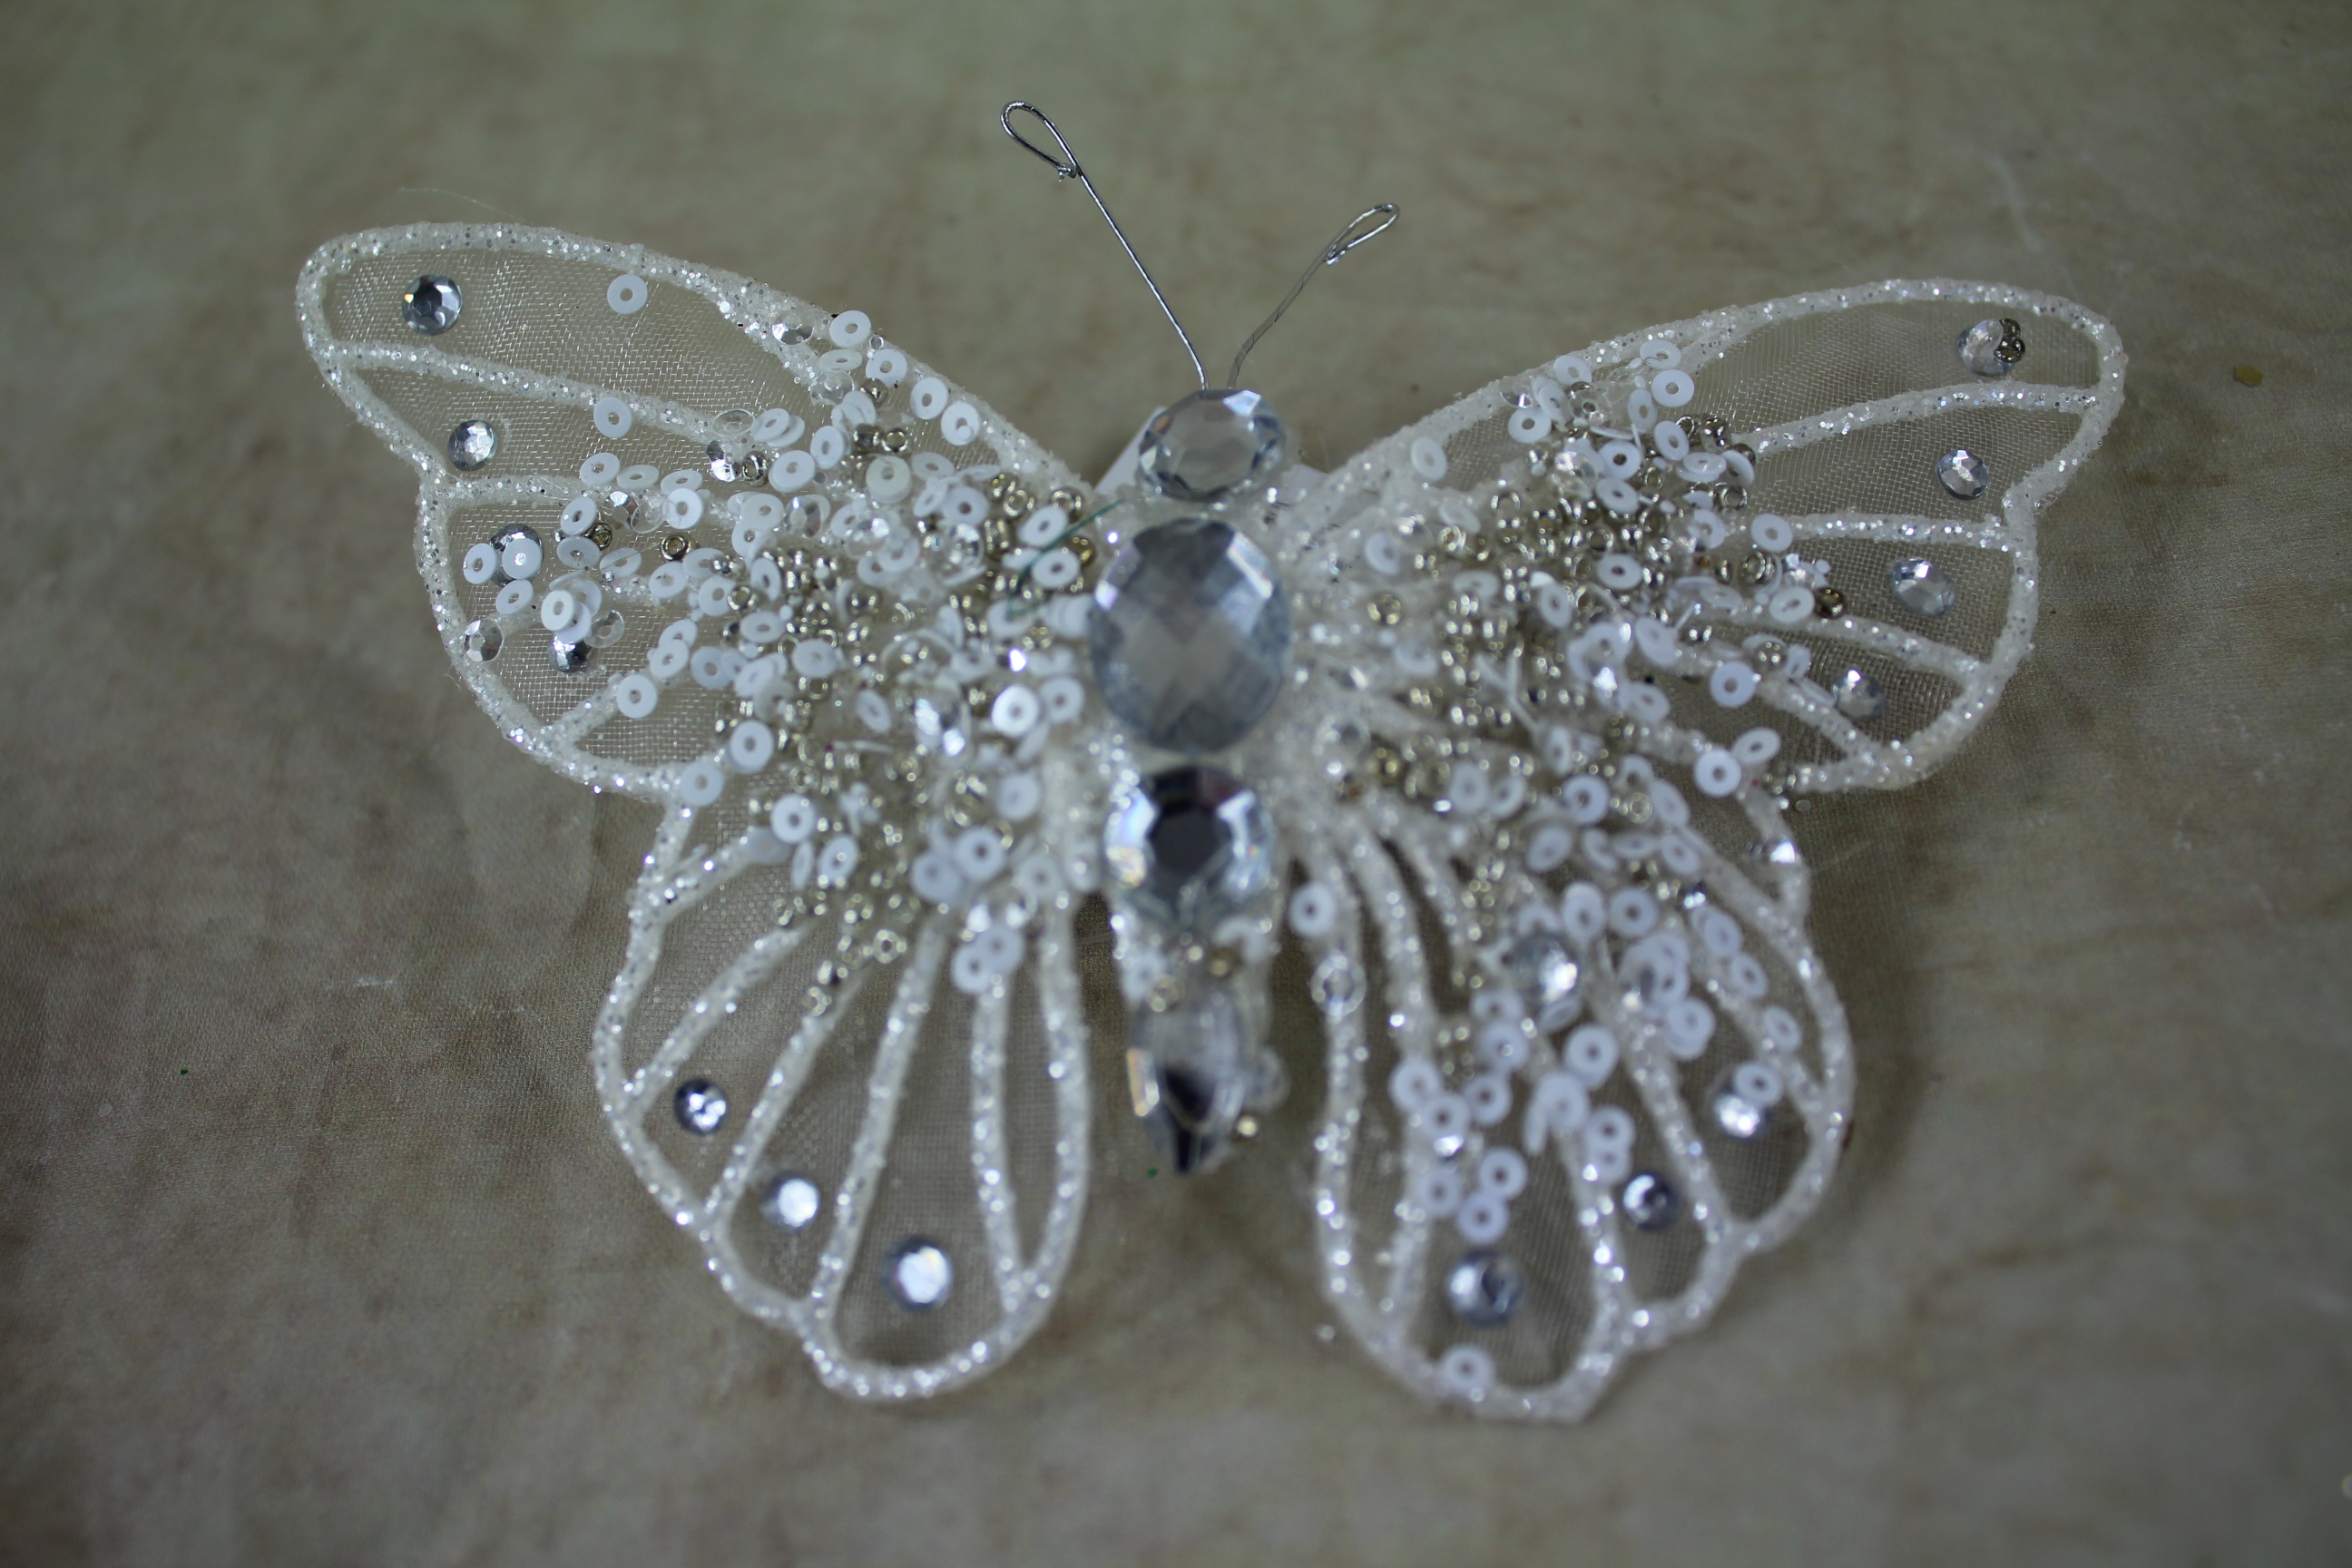 2 x 14cm gem butterflies on clips